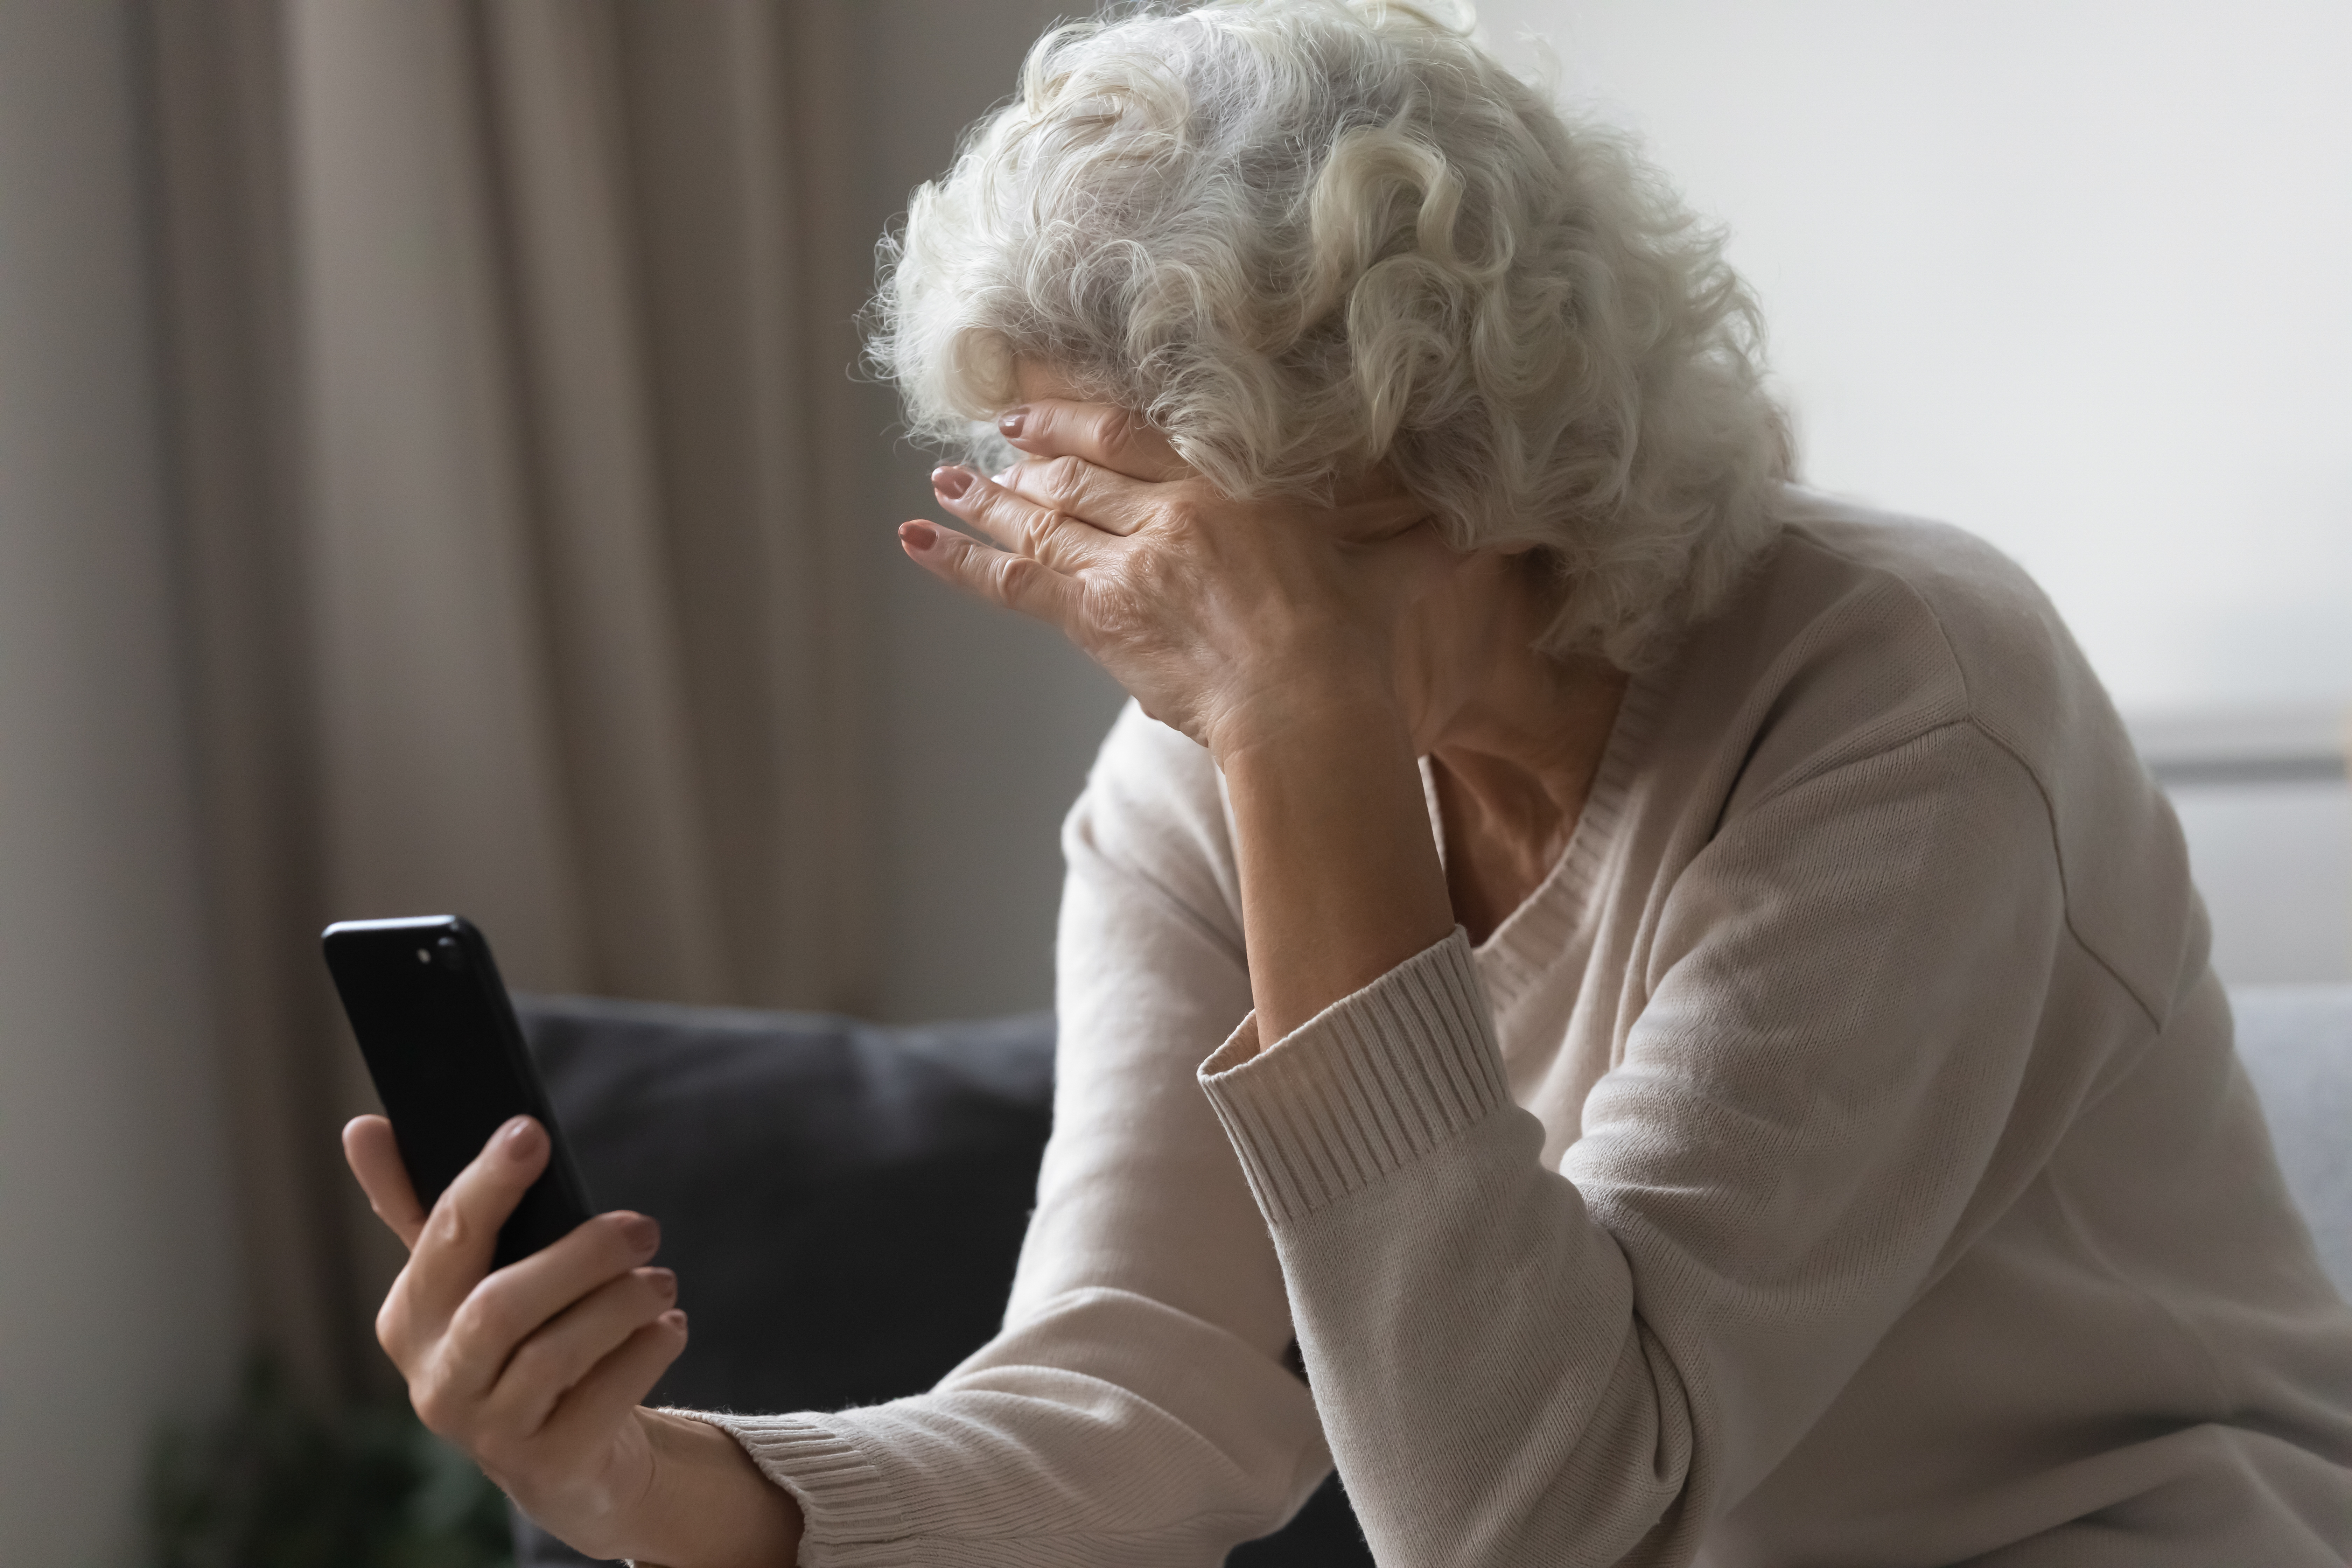 Eine ältere Frau schaut besorgt, während sie ein Handy in der Hand hält | Quelle: Shutterstock